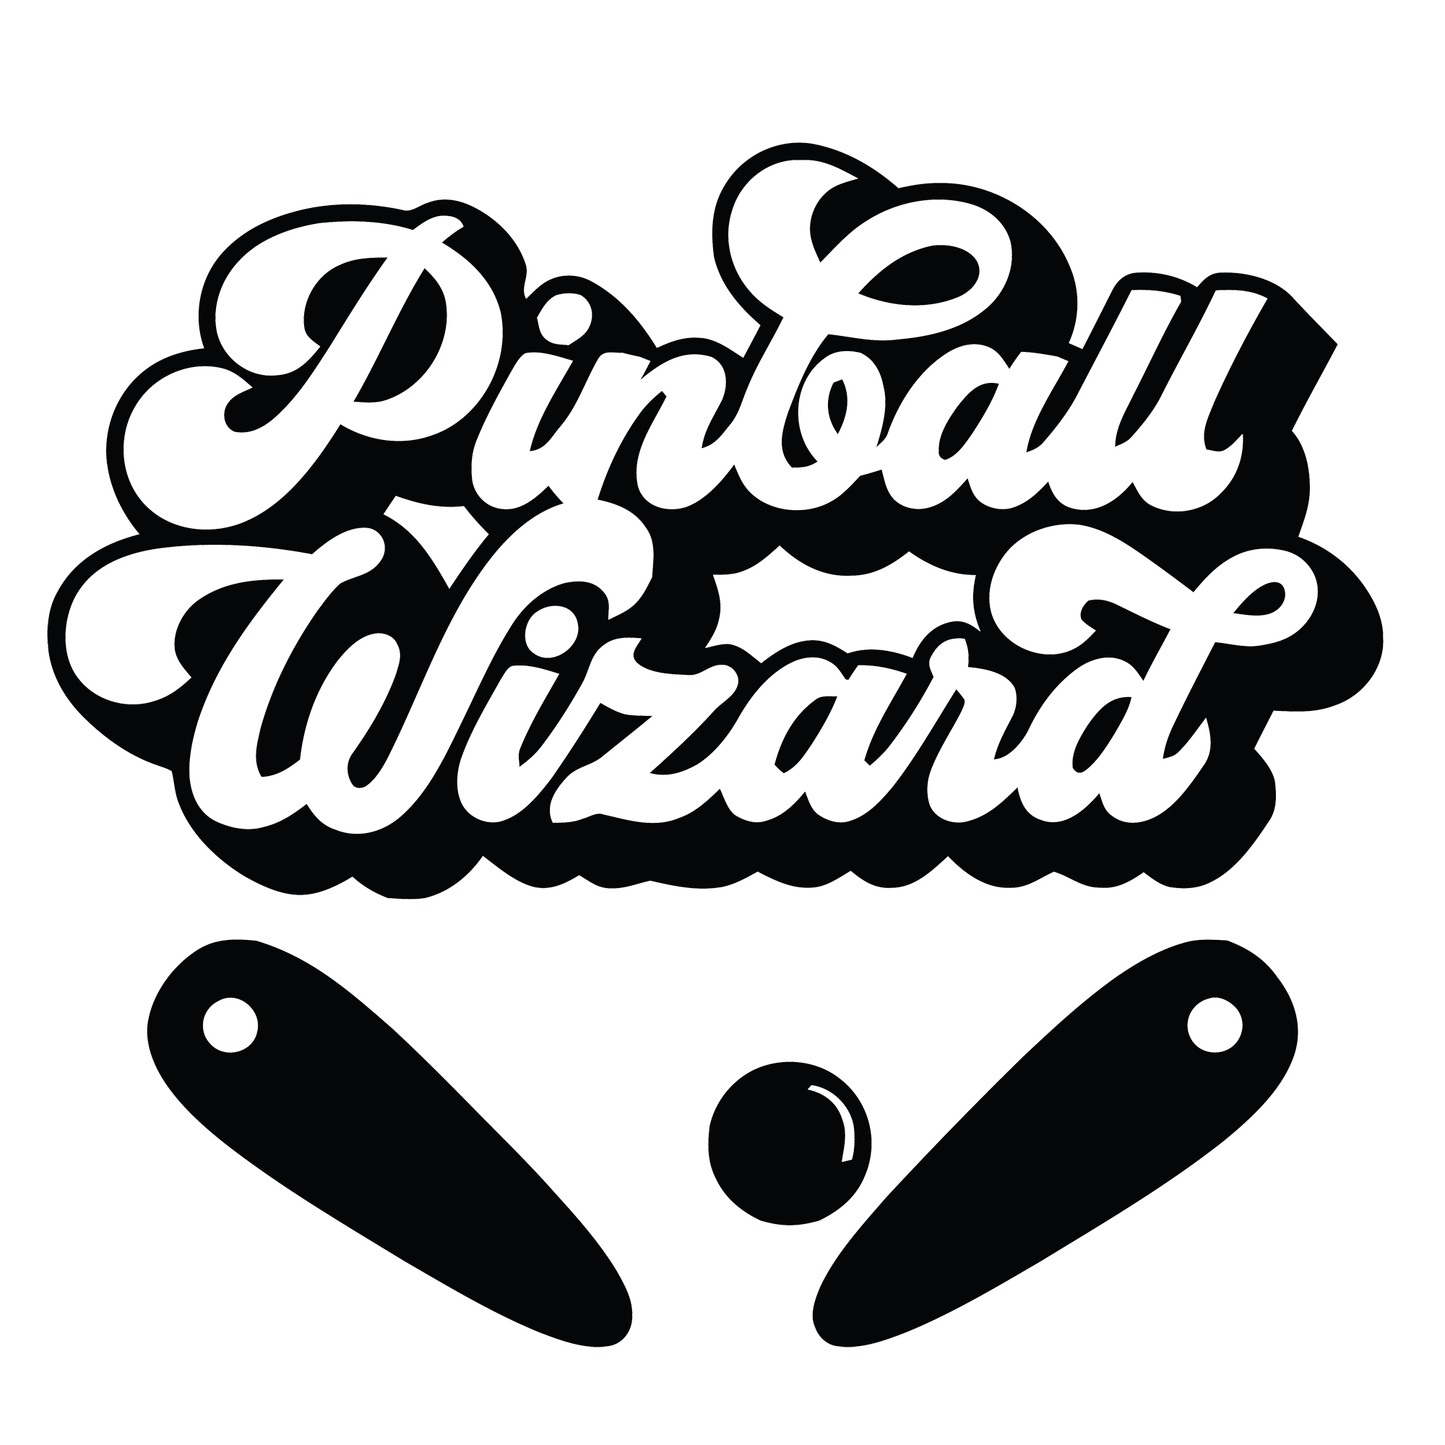 Pinball Wizard Vinyl Decal Sticker